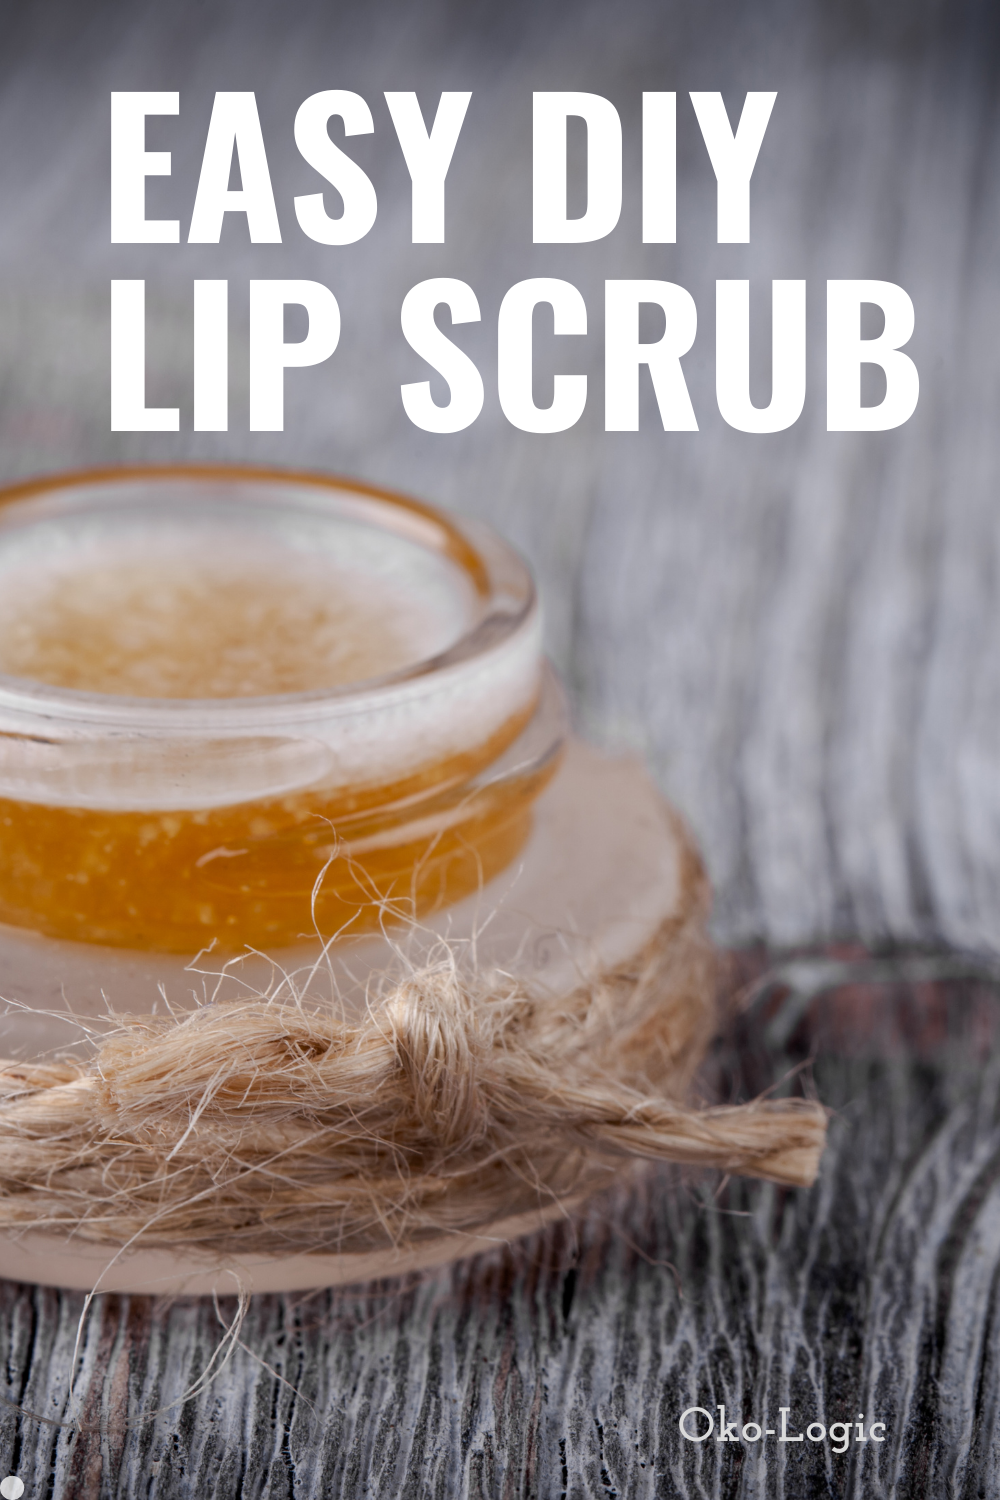 Yummy Coconut Oil and Sugar Lip Scrub That Works